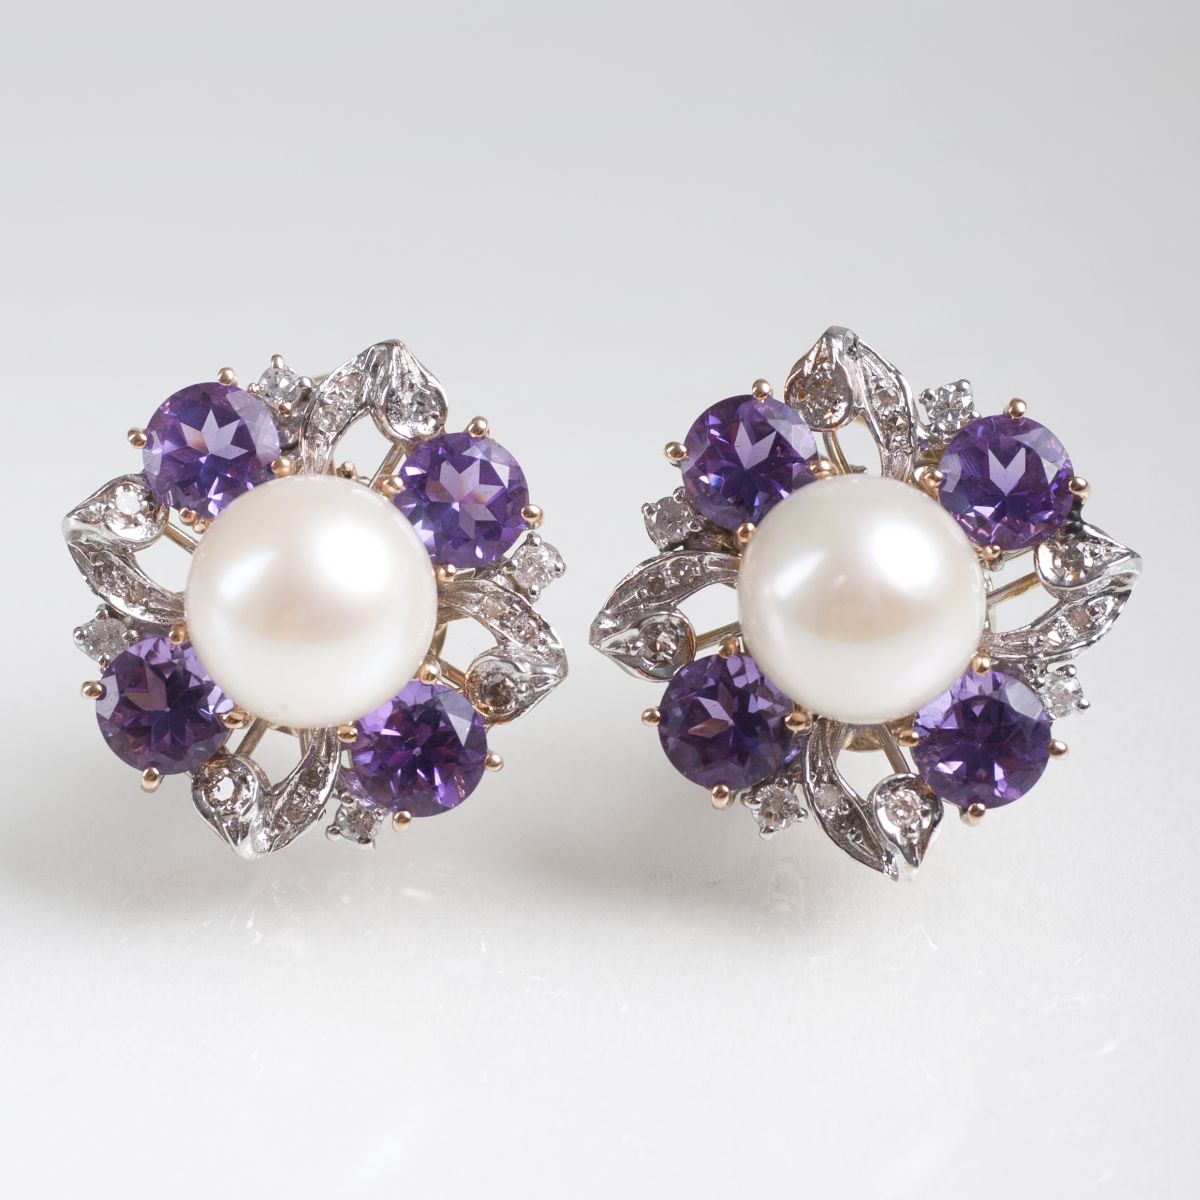 A pair of pearl amethyst diamond earrings